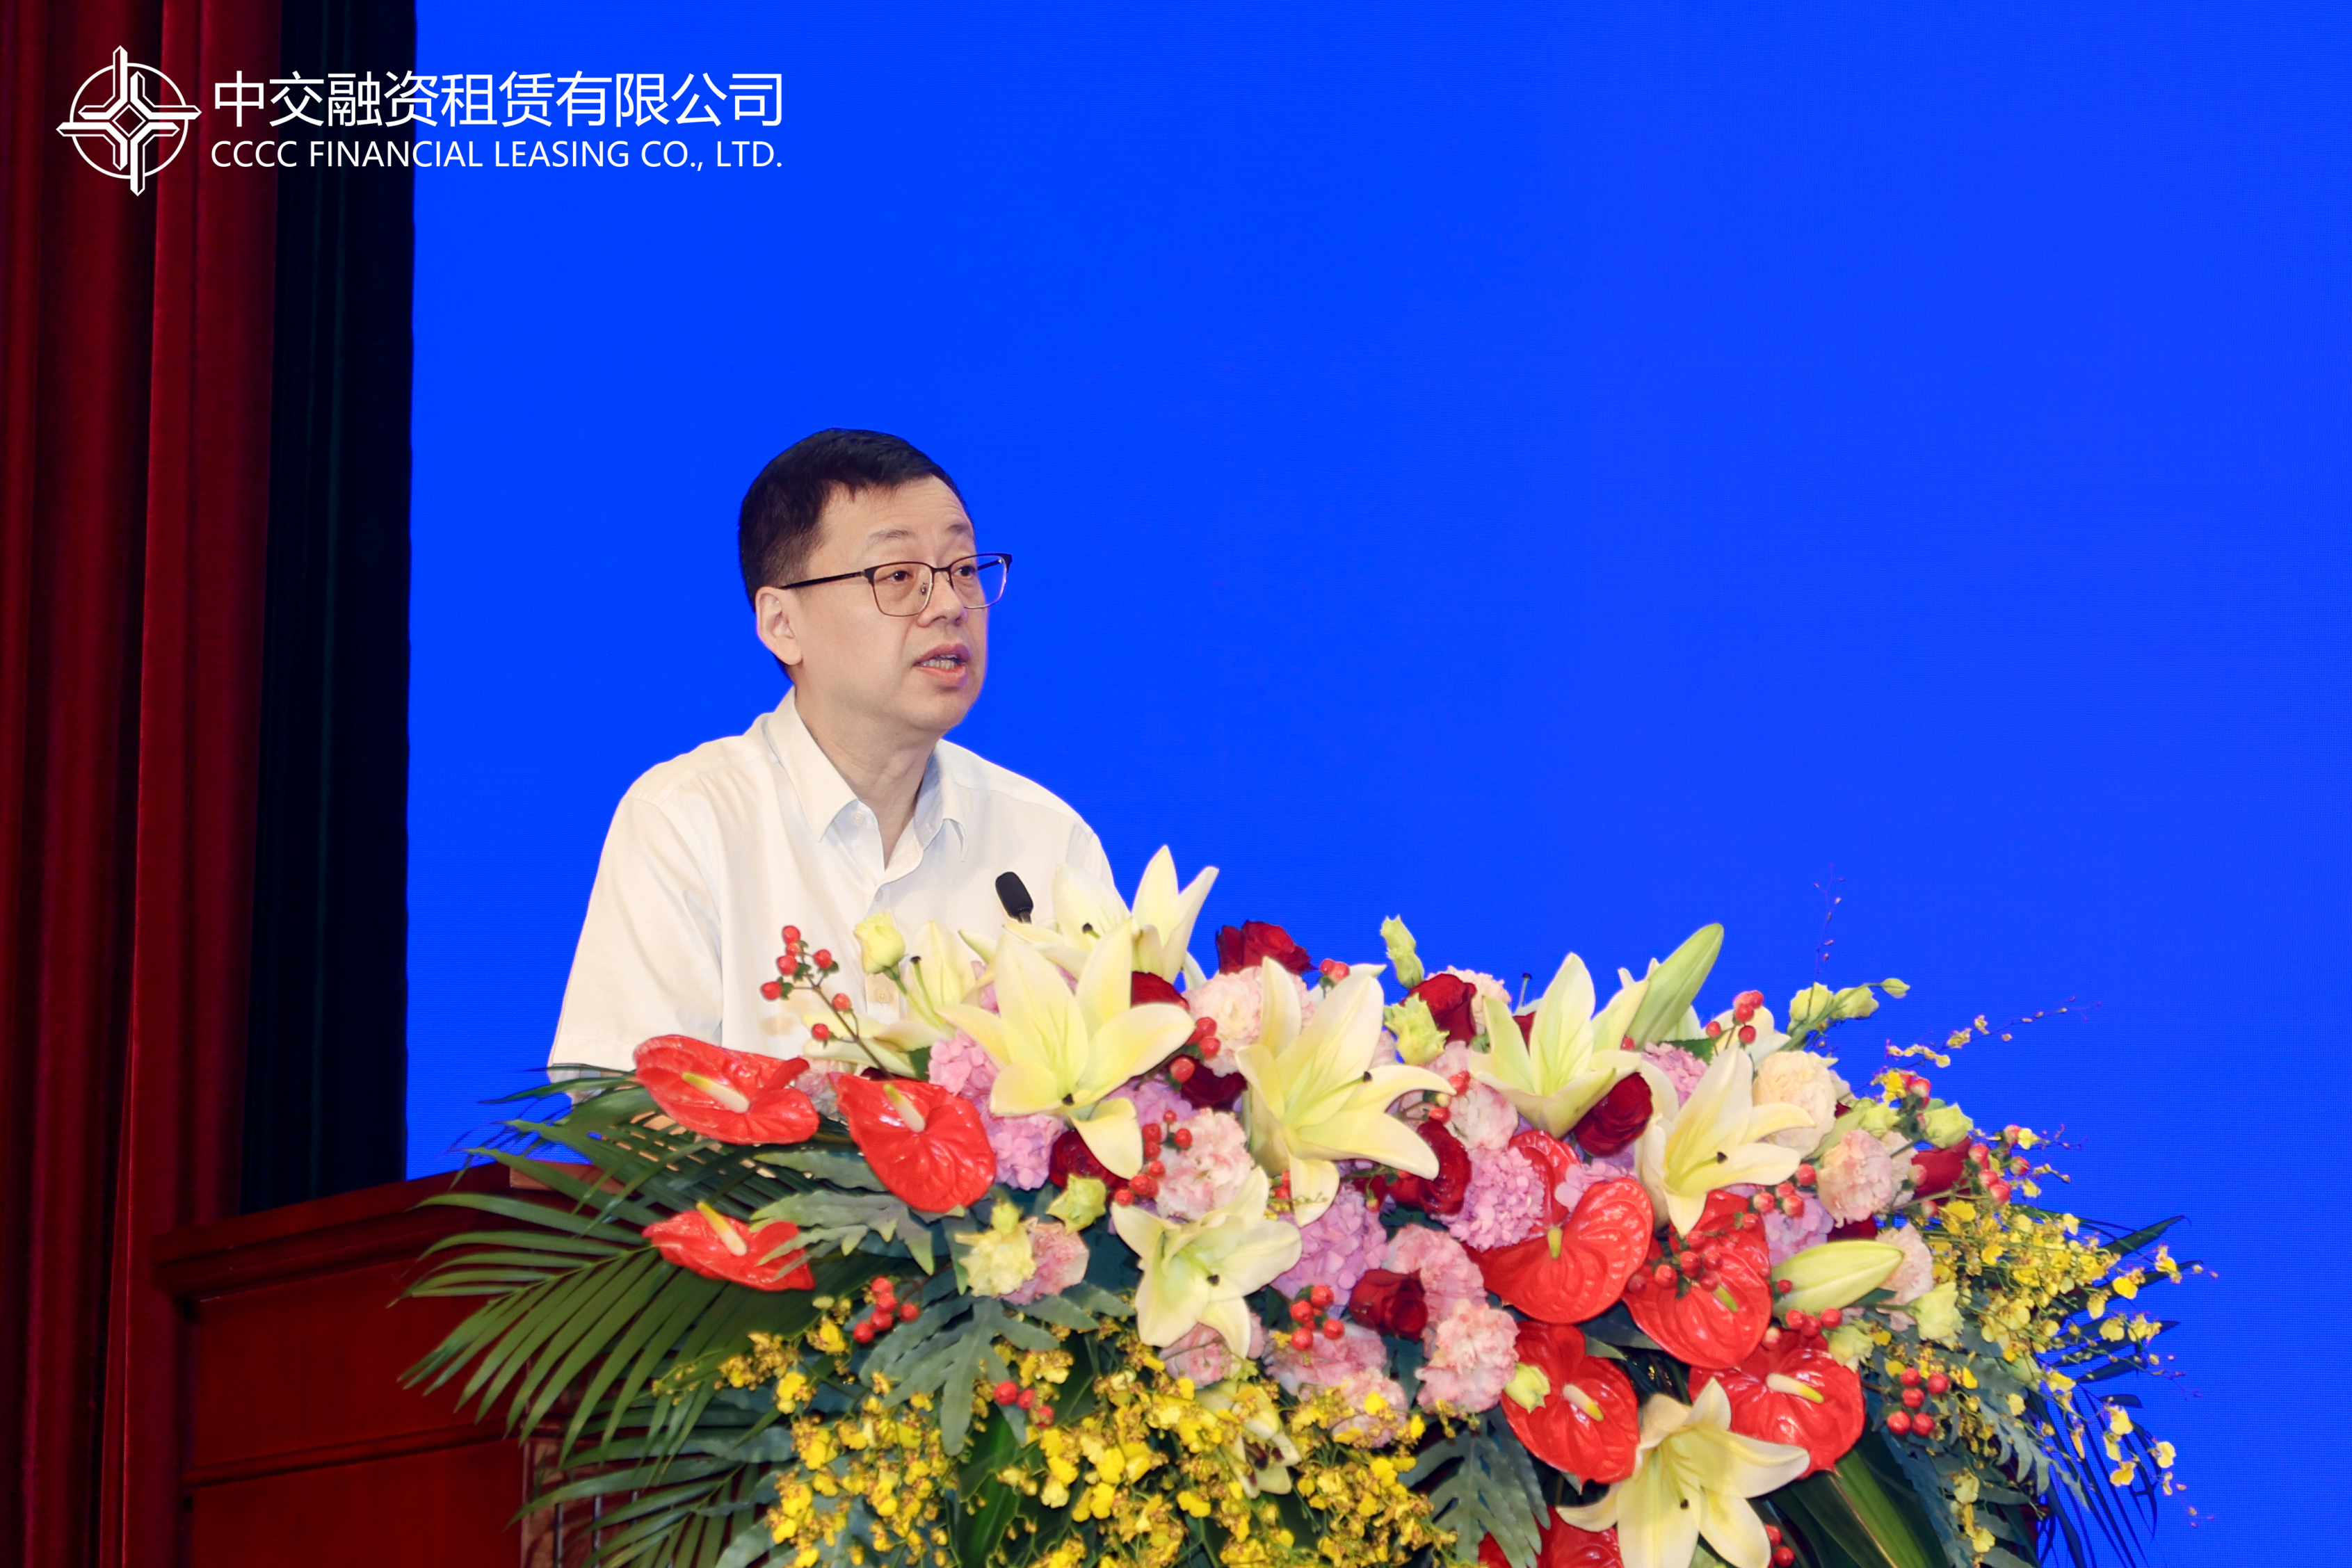 上海市租赁行业协会秘书长赵宏伟表示,作为金融市场最为贴近区域产业